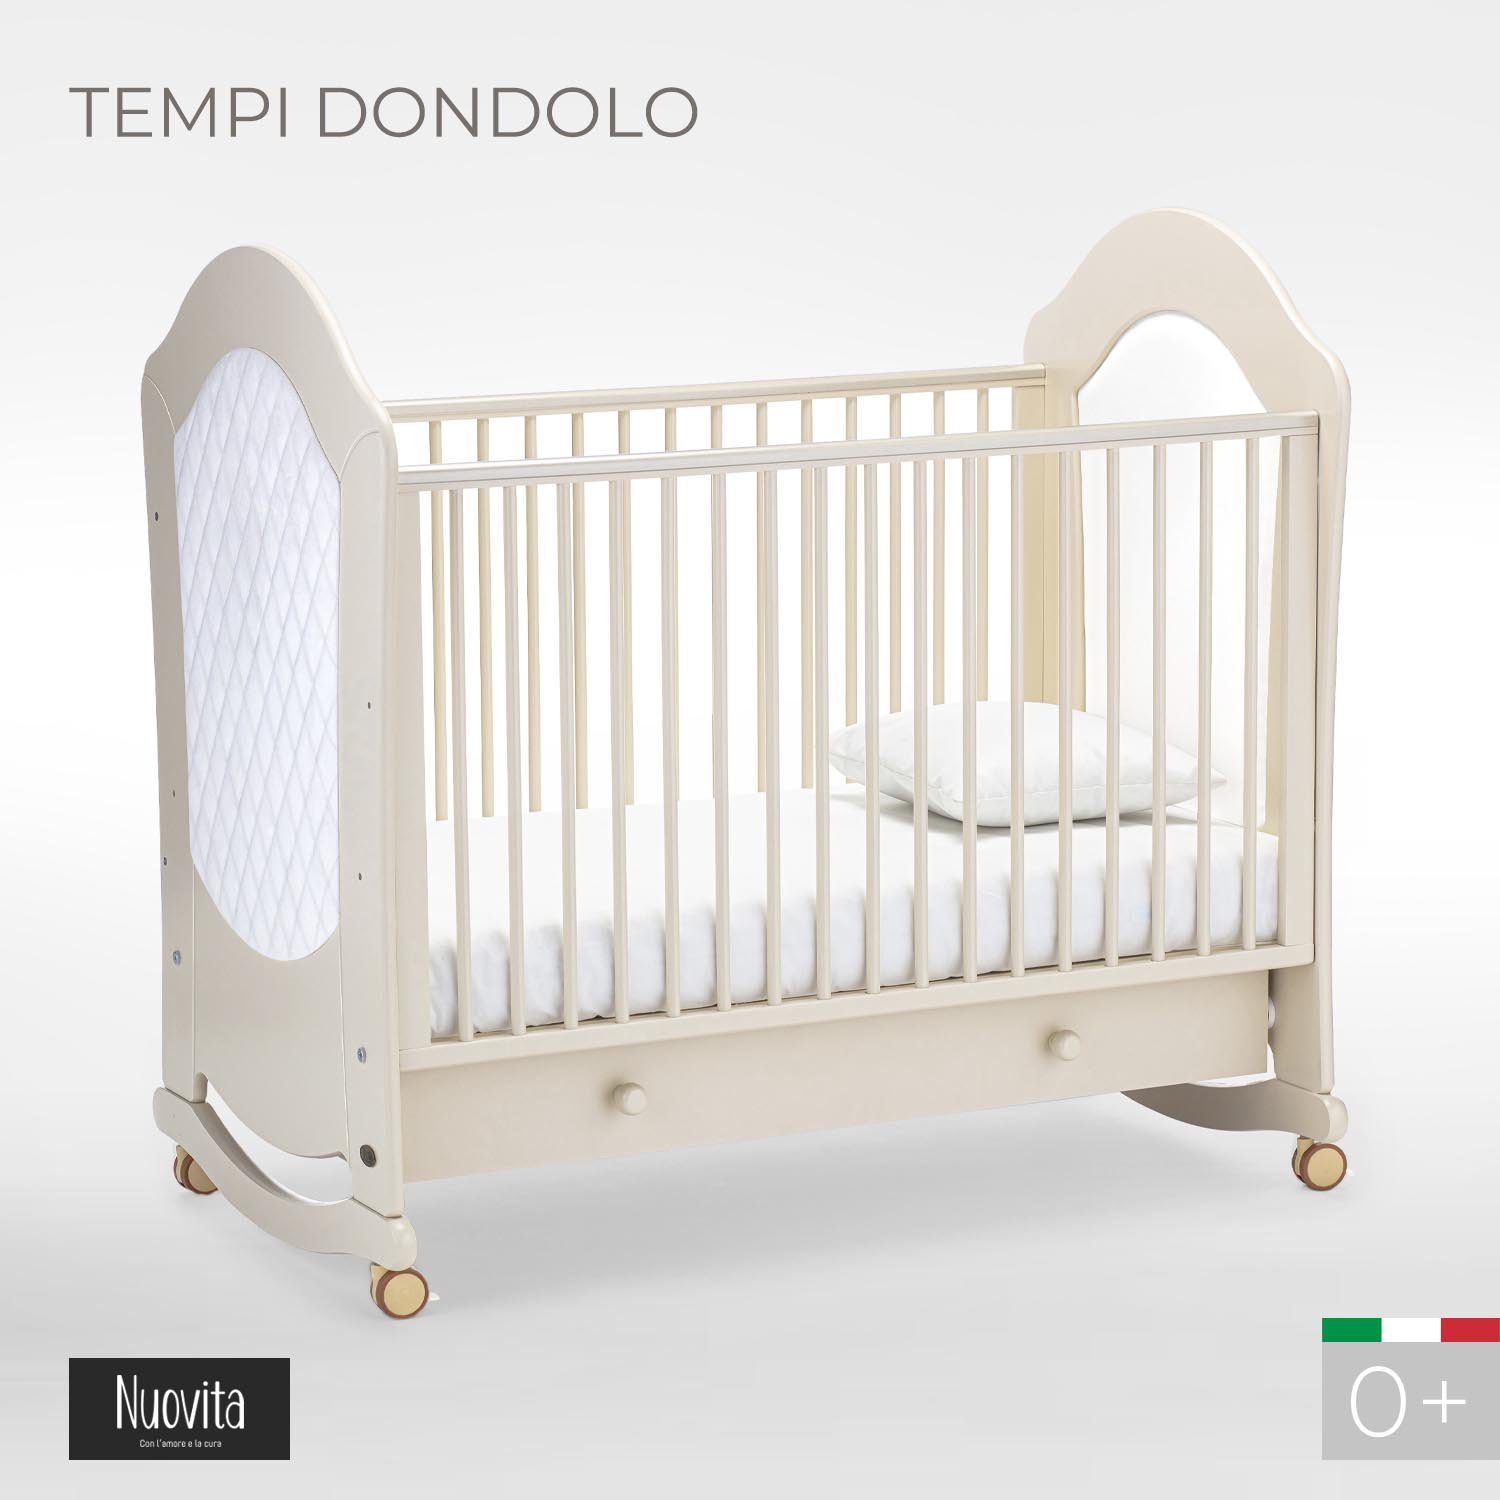 Детская кровать Nuovita Tempi dondolo Avorio, Слоновая кость